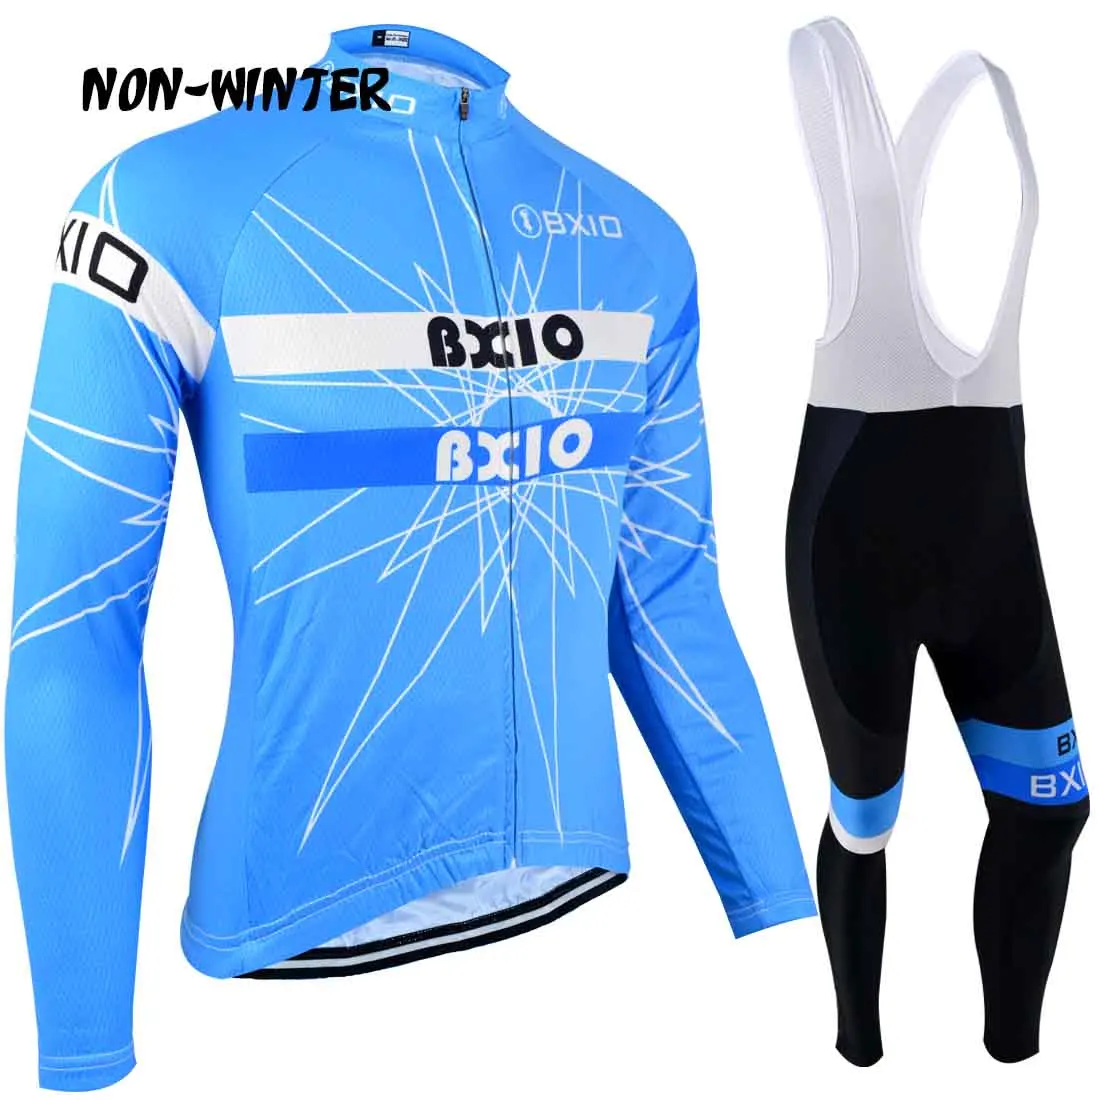 BXIO/осенняя одежда для велоспорта с длинными рукавами, Джерси для велоспорта синего цвета, профессиональная велосипедная трикотажная одежда, зимняя теплая велосипедная одежда, спортивная одежда на открытом воздухе 113 - Цвет: non winter